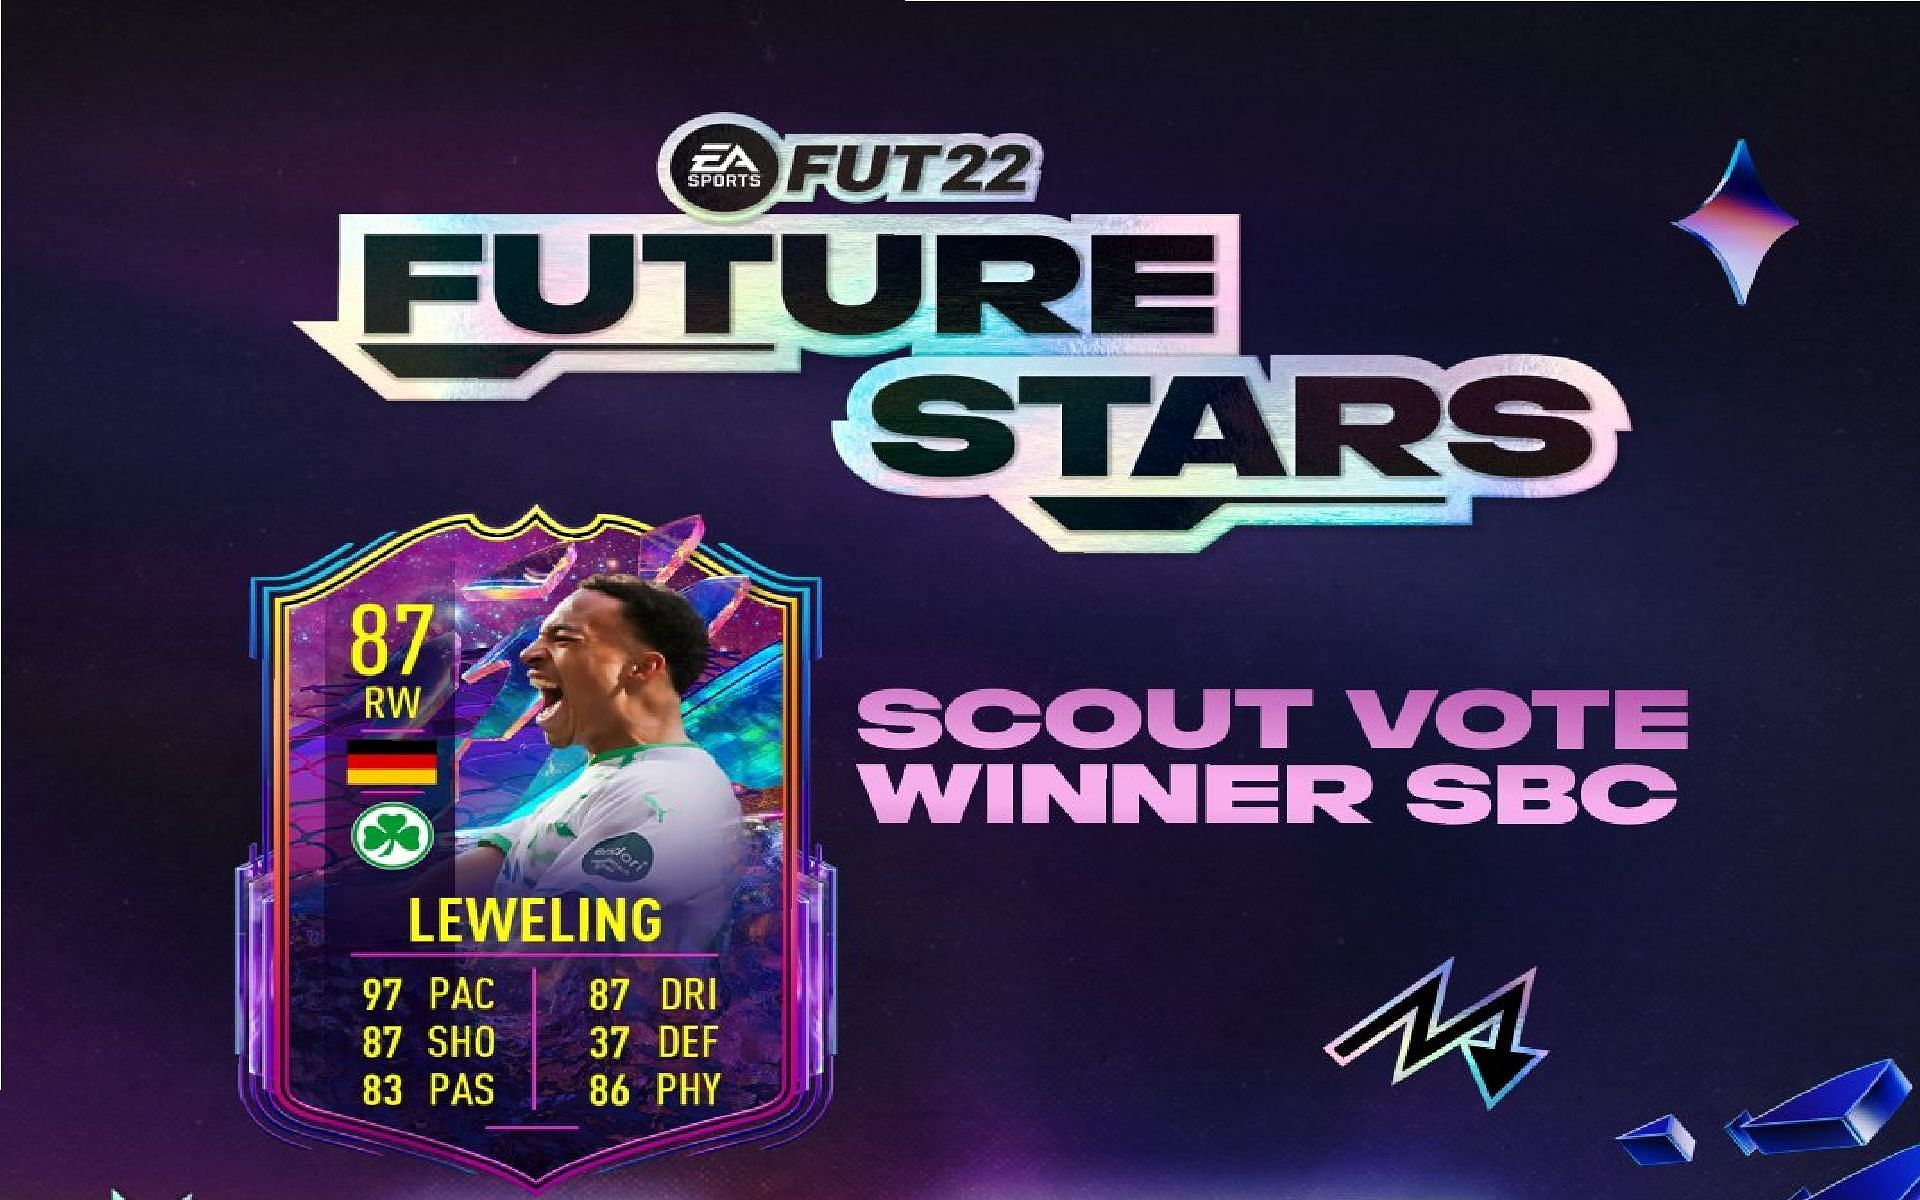 Jamie Leweling Talent Scout Winner SBC in FIFA Ultimate Team (Image via Sportskeeda)